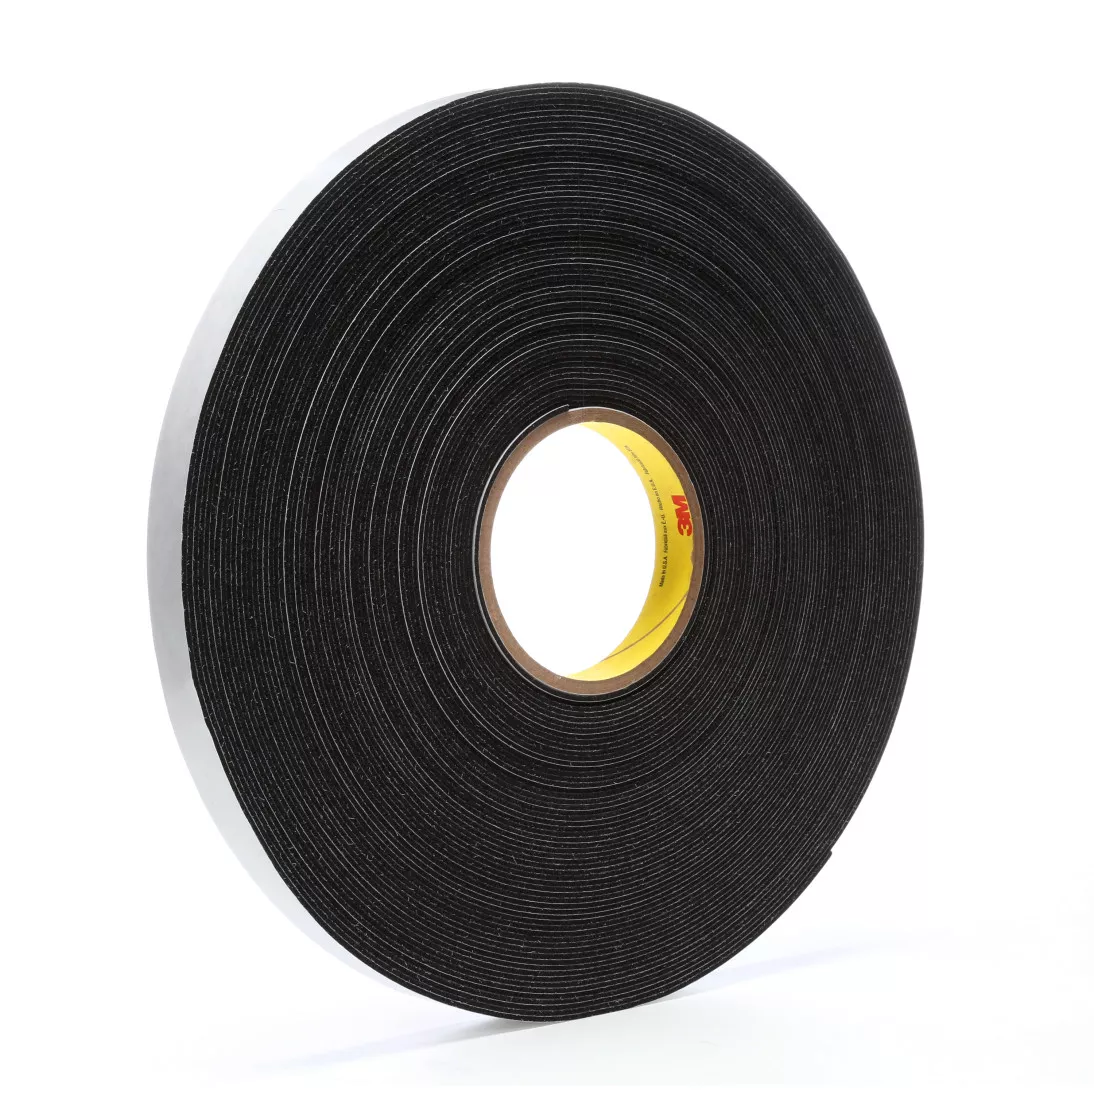 3M™ Vinyl Foam Tape 4516, Black, 3/4 in x 36 yd, 62 mil, 12 rolls per
case